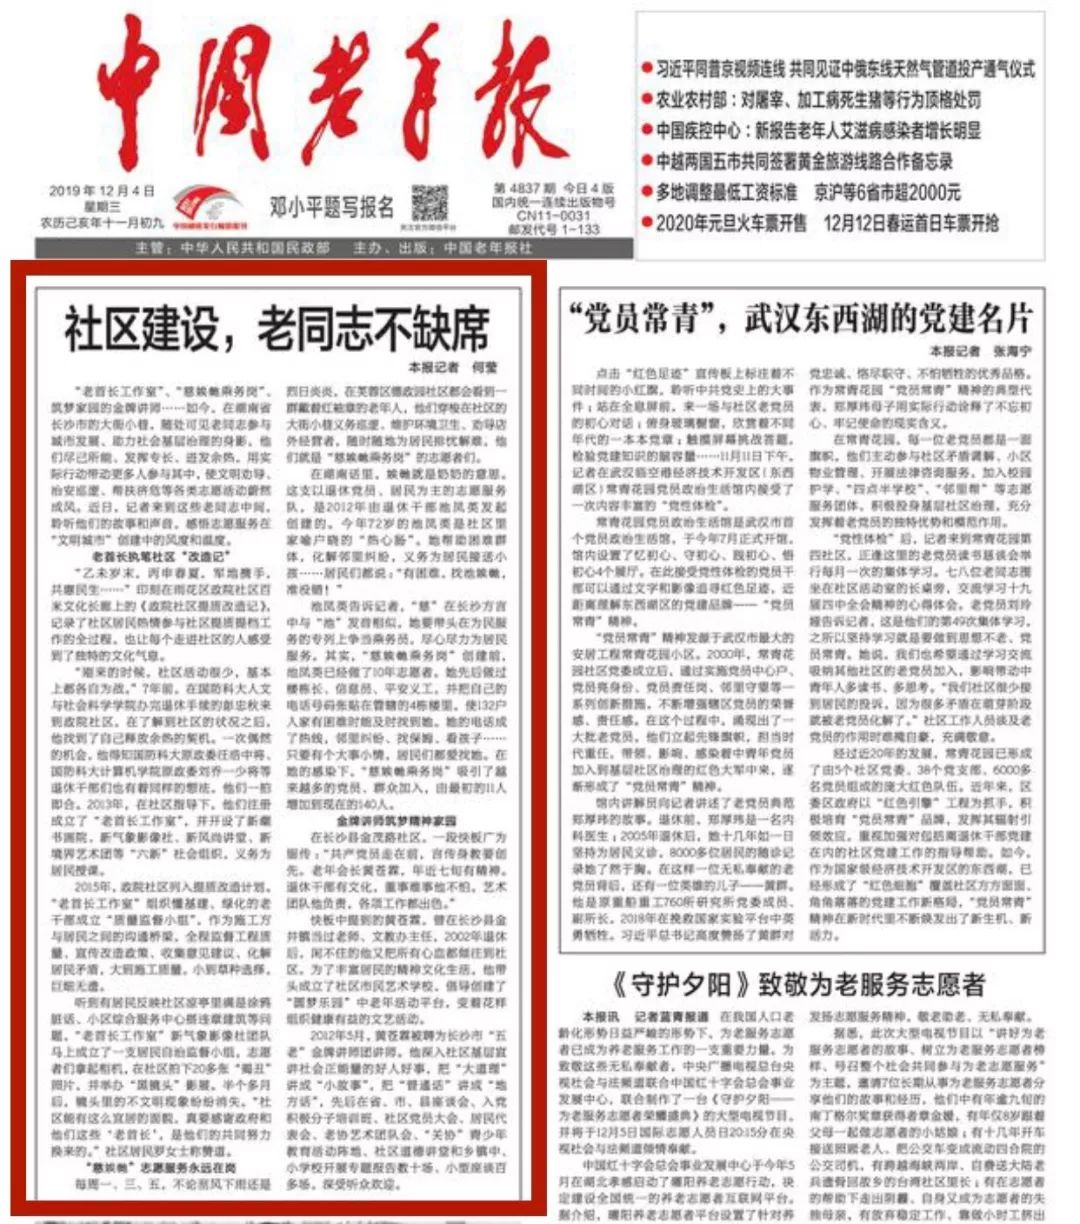 中国老年报 电子版图片